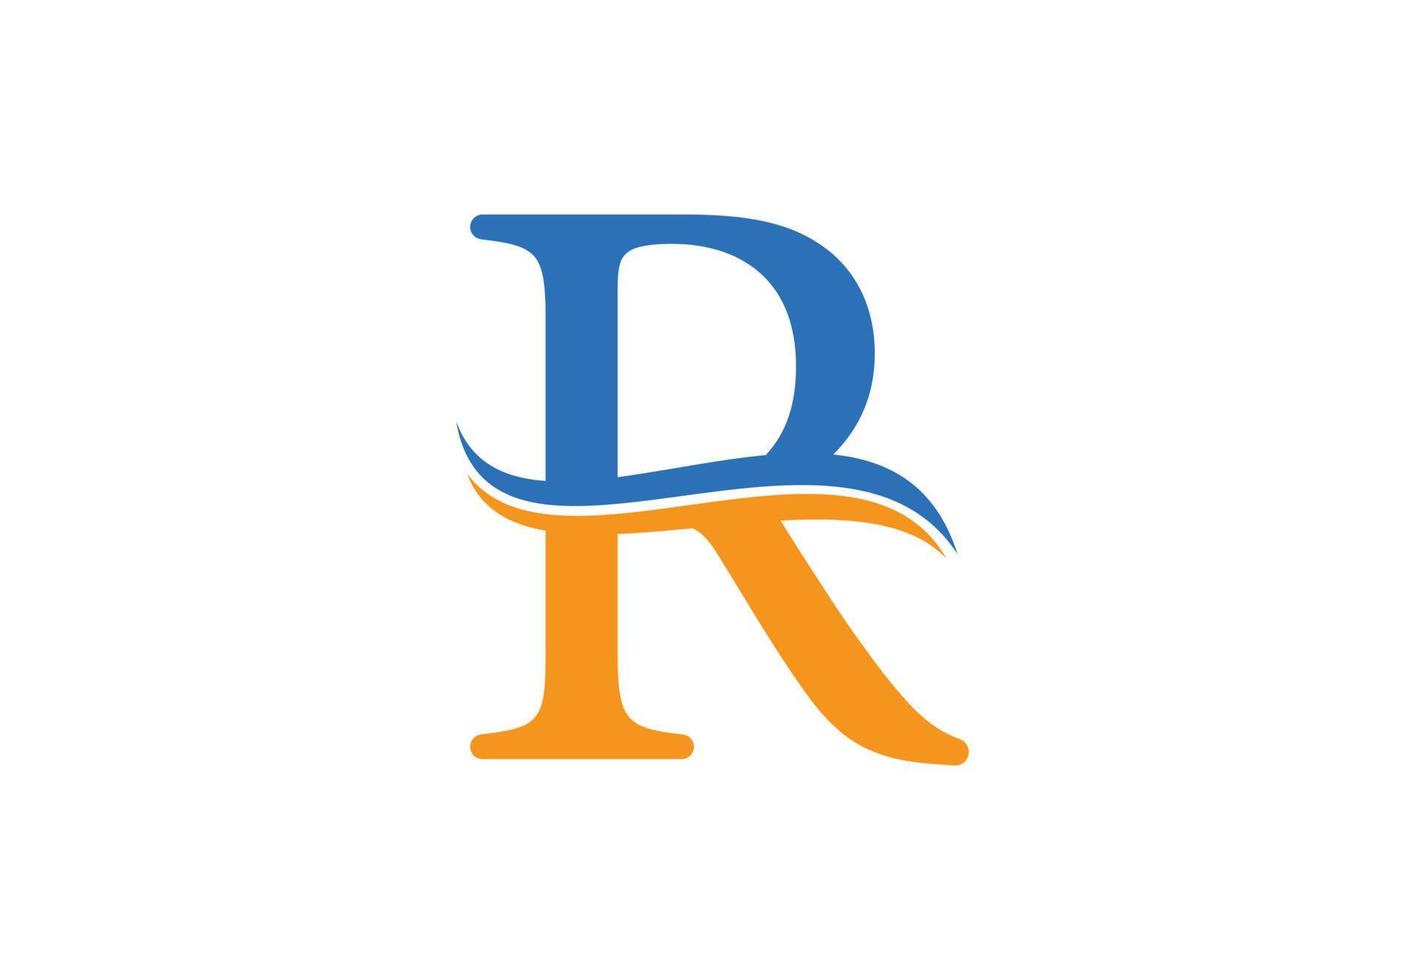 inicial carta r logotipo Projeto modelo, vetor ilustração